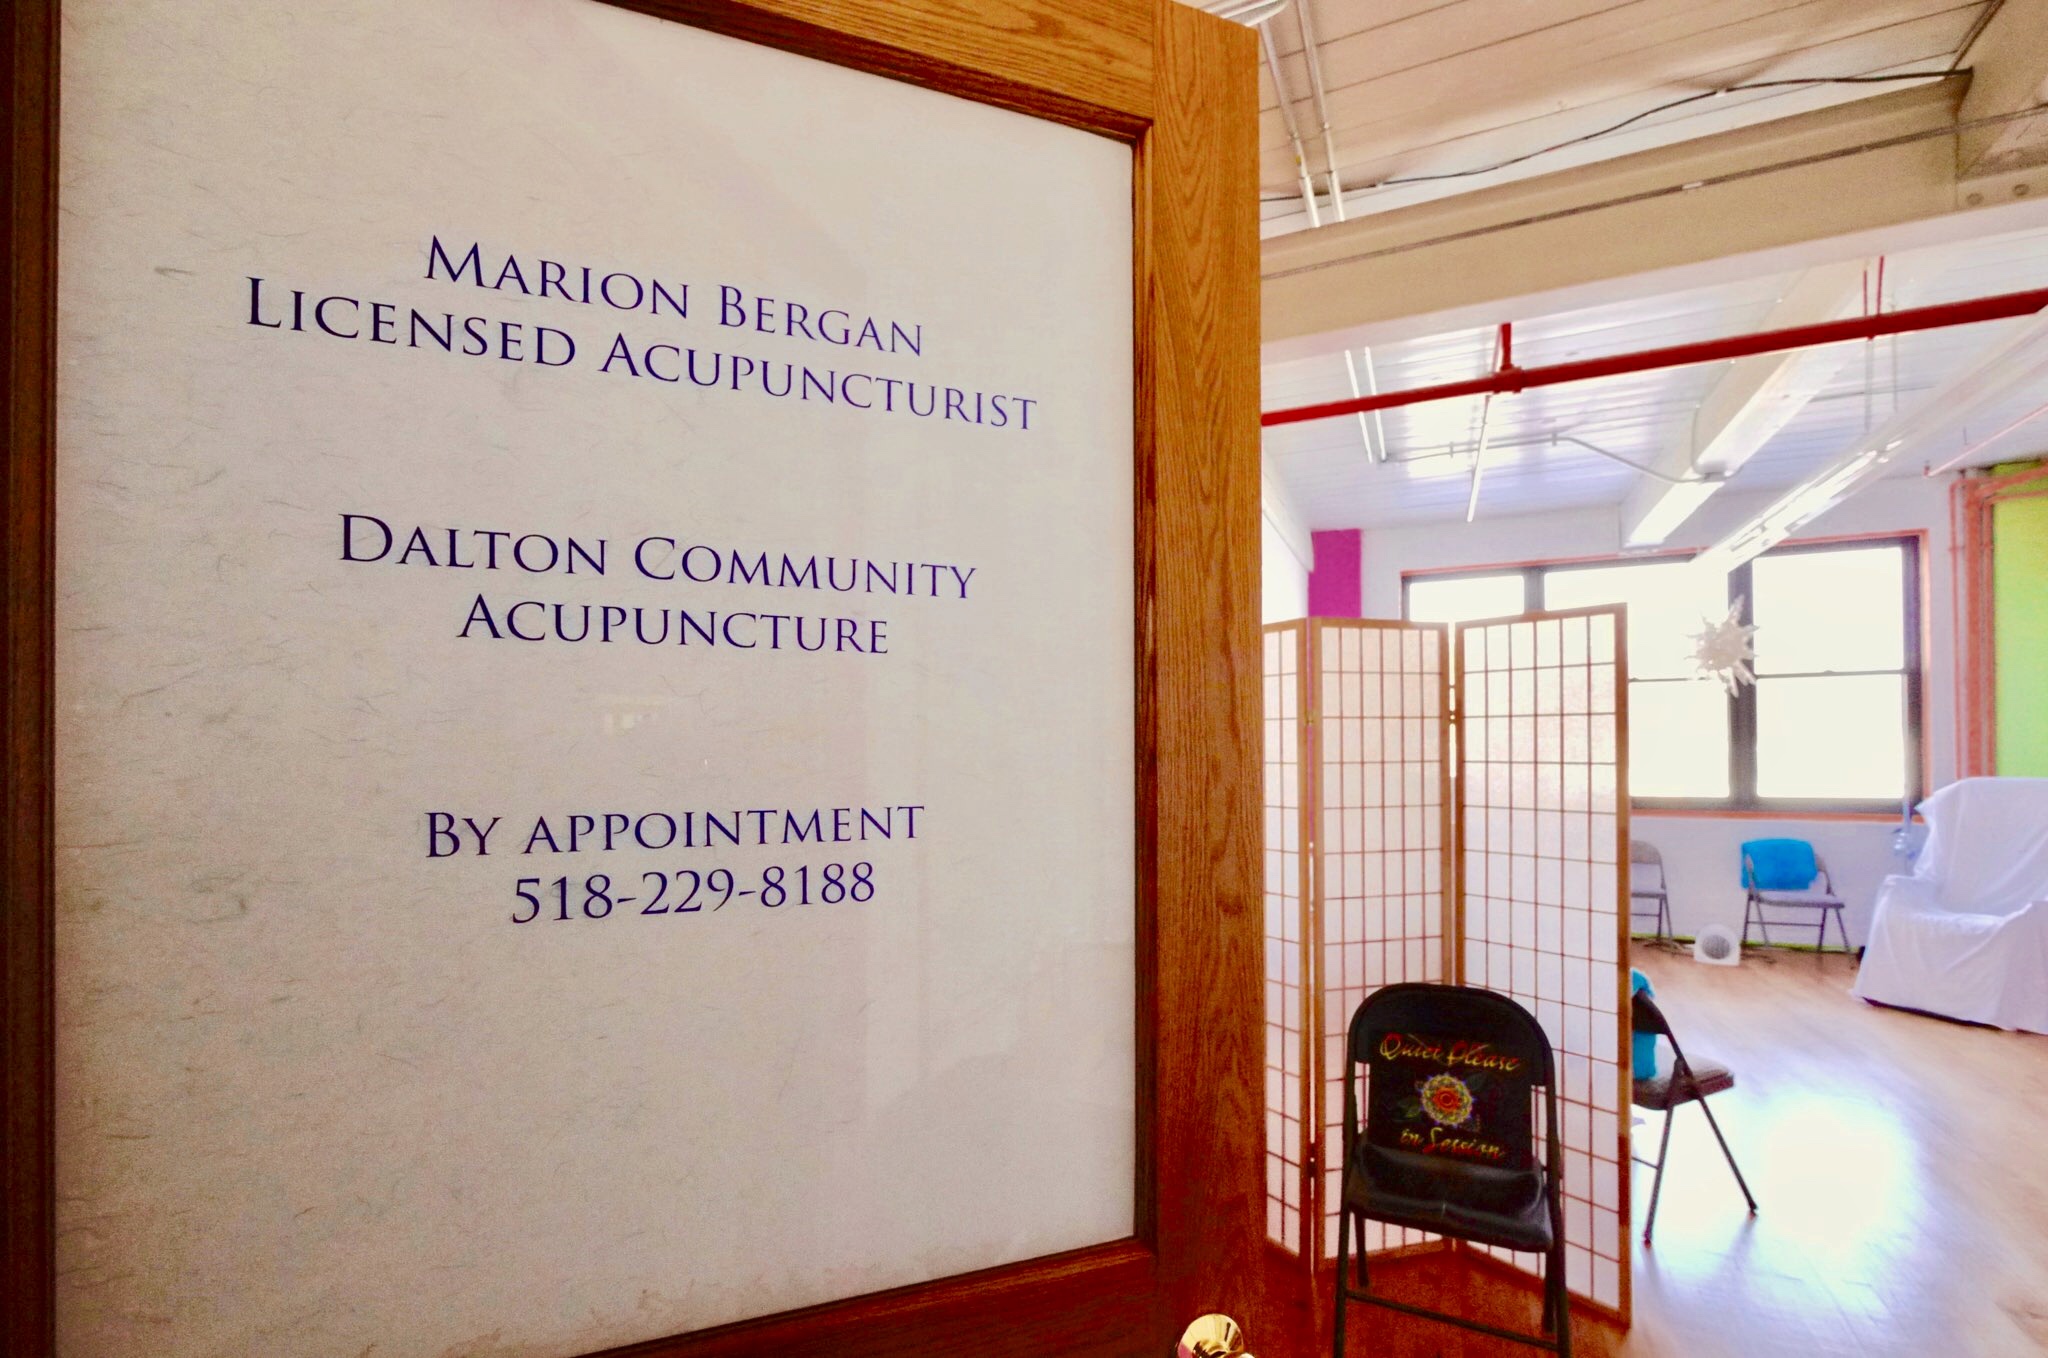 Dalton Community Acupuncture